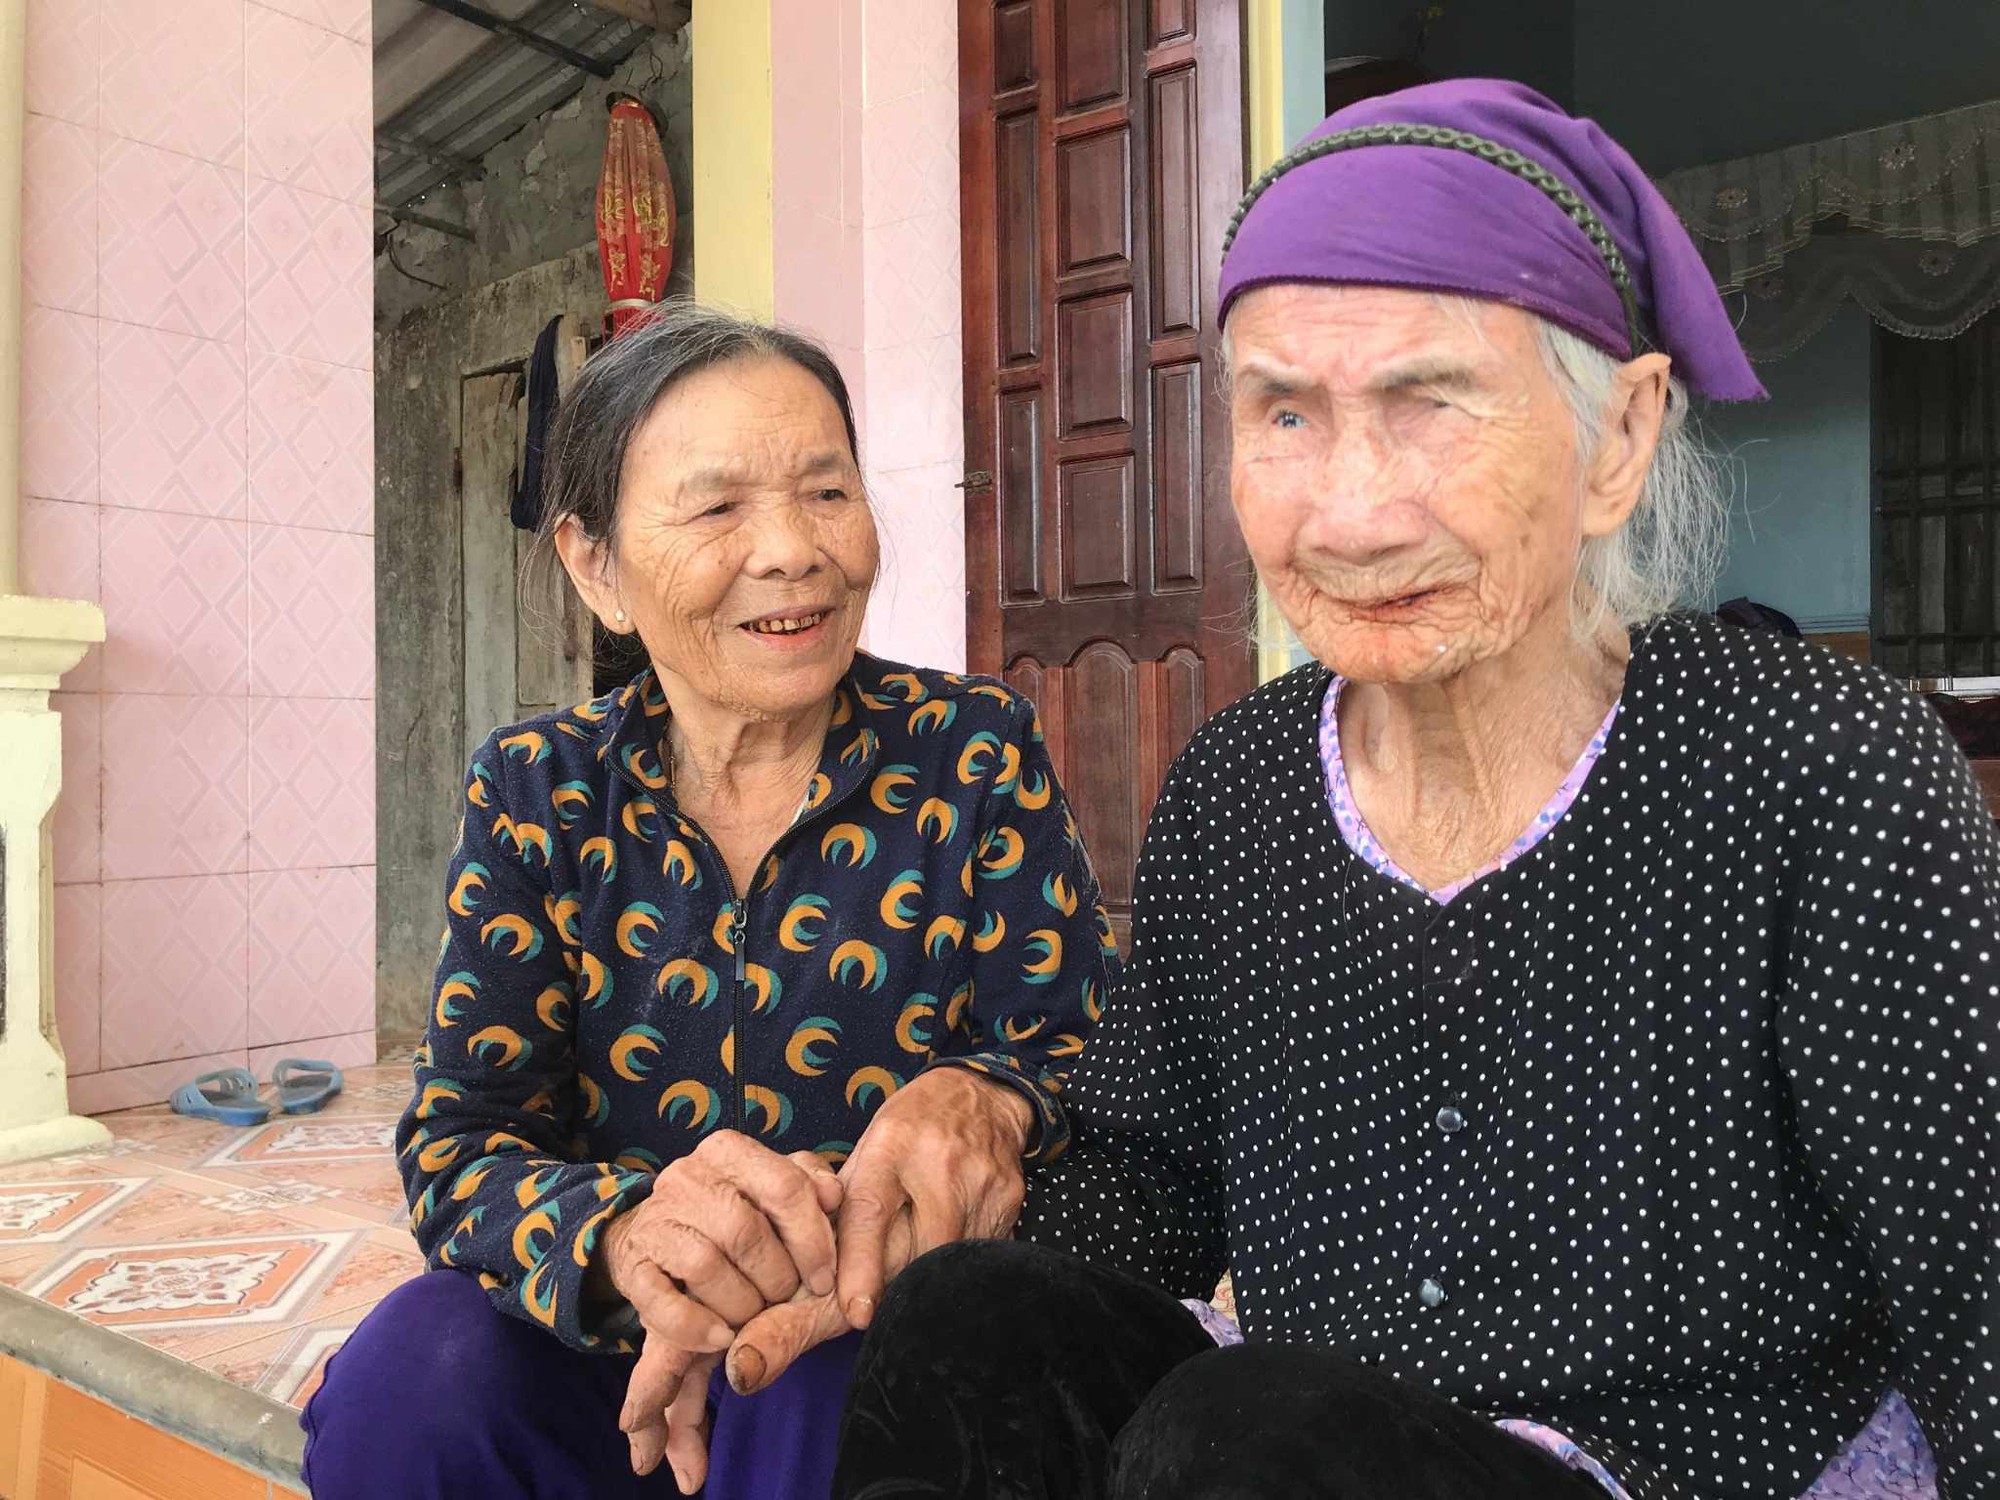 Đầu năm mới về thăm &quot;làng trường thọ&quot;, gặp cụ bà 105 tuổi vẫn khỏe mạnh minh mẫn, chăm làm việc nhà- Ảnh 3.